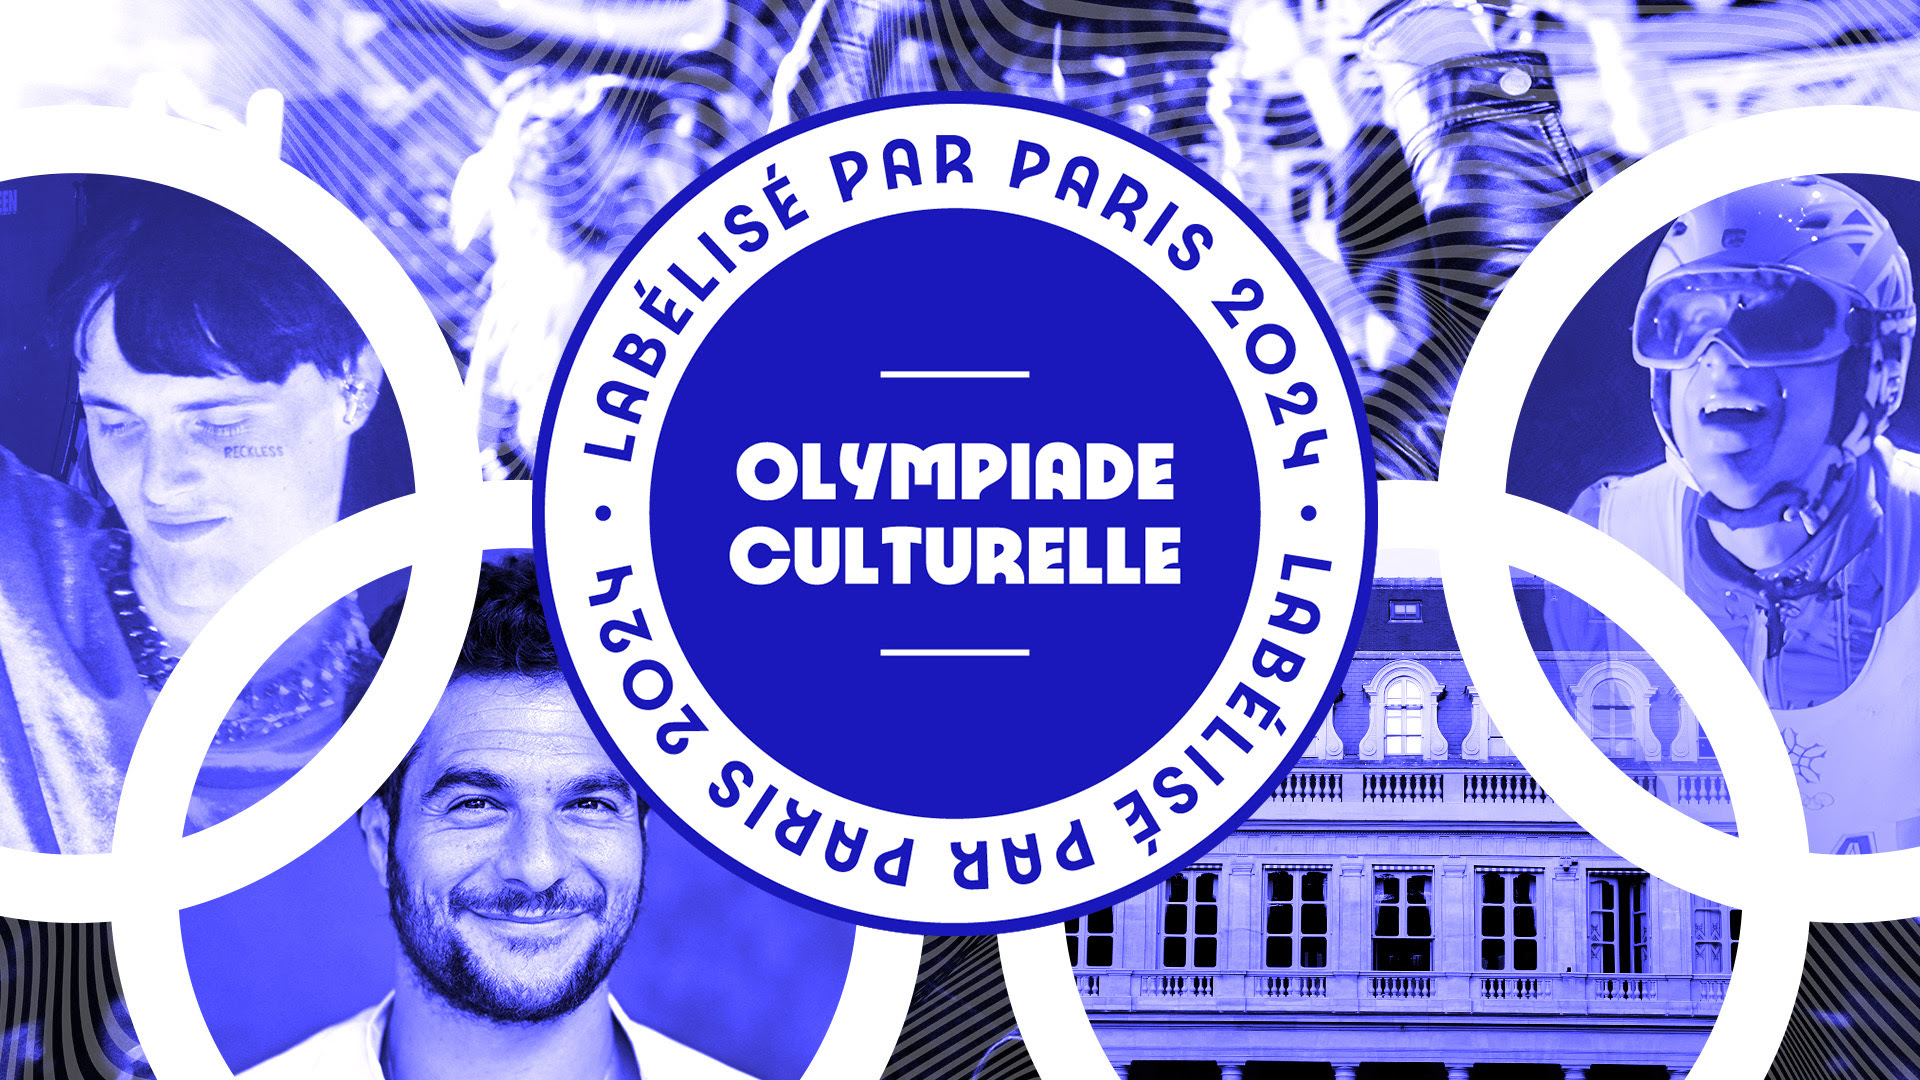 Olympiade Culturelle